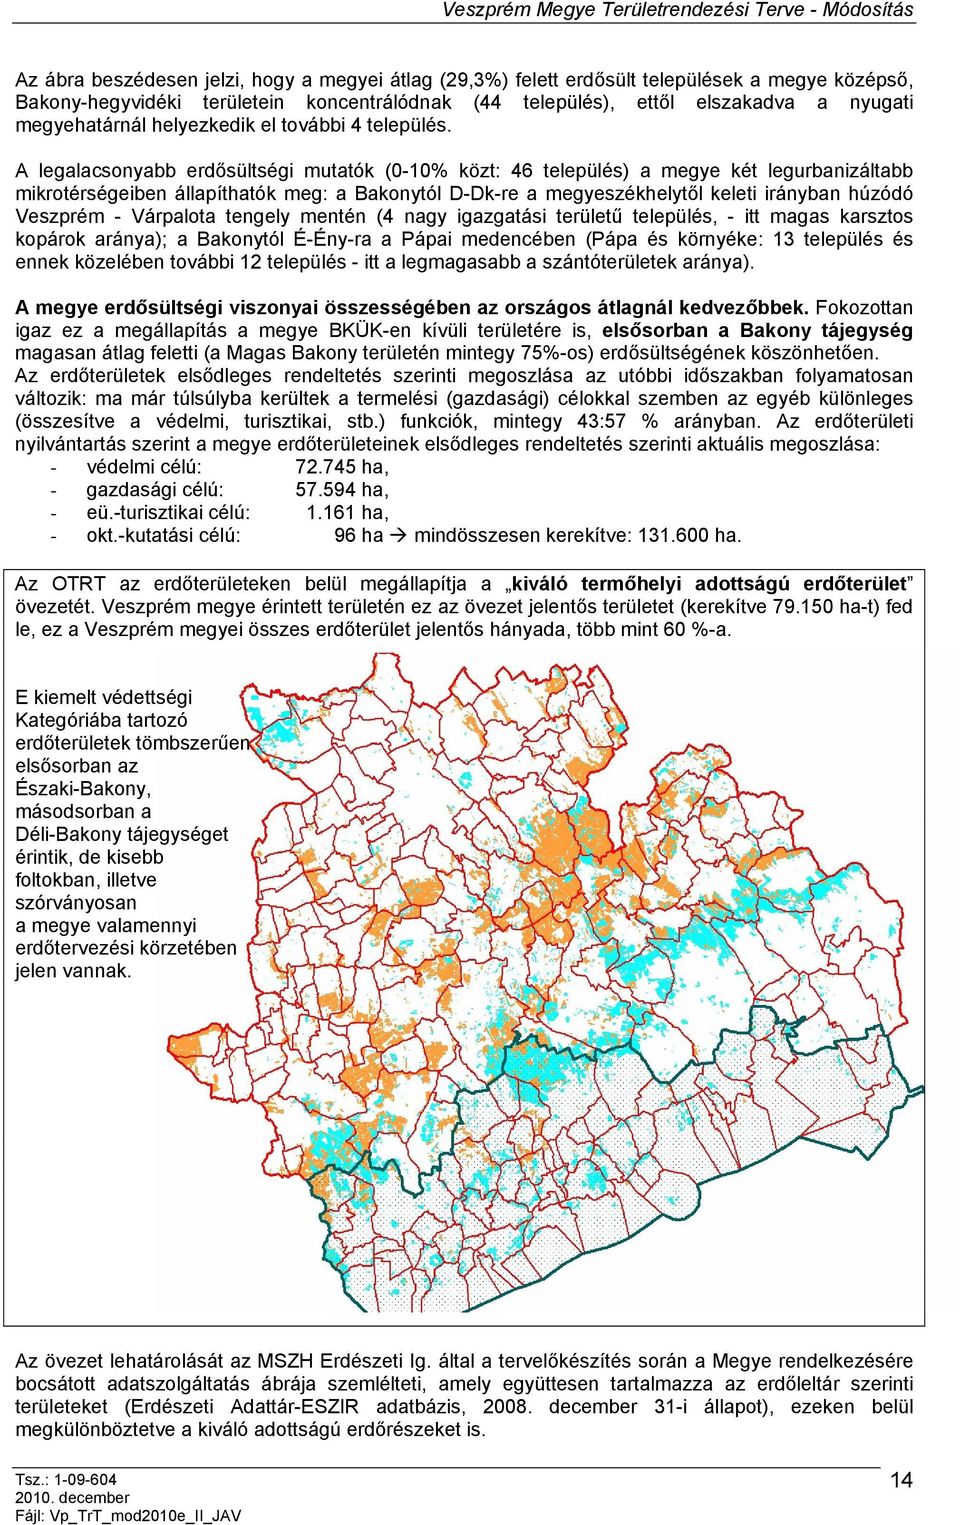 A legalacsonyabb erdősültségi mutatók (0-10% közt: 46 település) a megye két legurbanizáltabb mikrotérségeiben állapíthatók meg: a Bakonytól D-Dk-re a megyeszékhelytől keleti irányban húzódó Veszprém